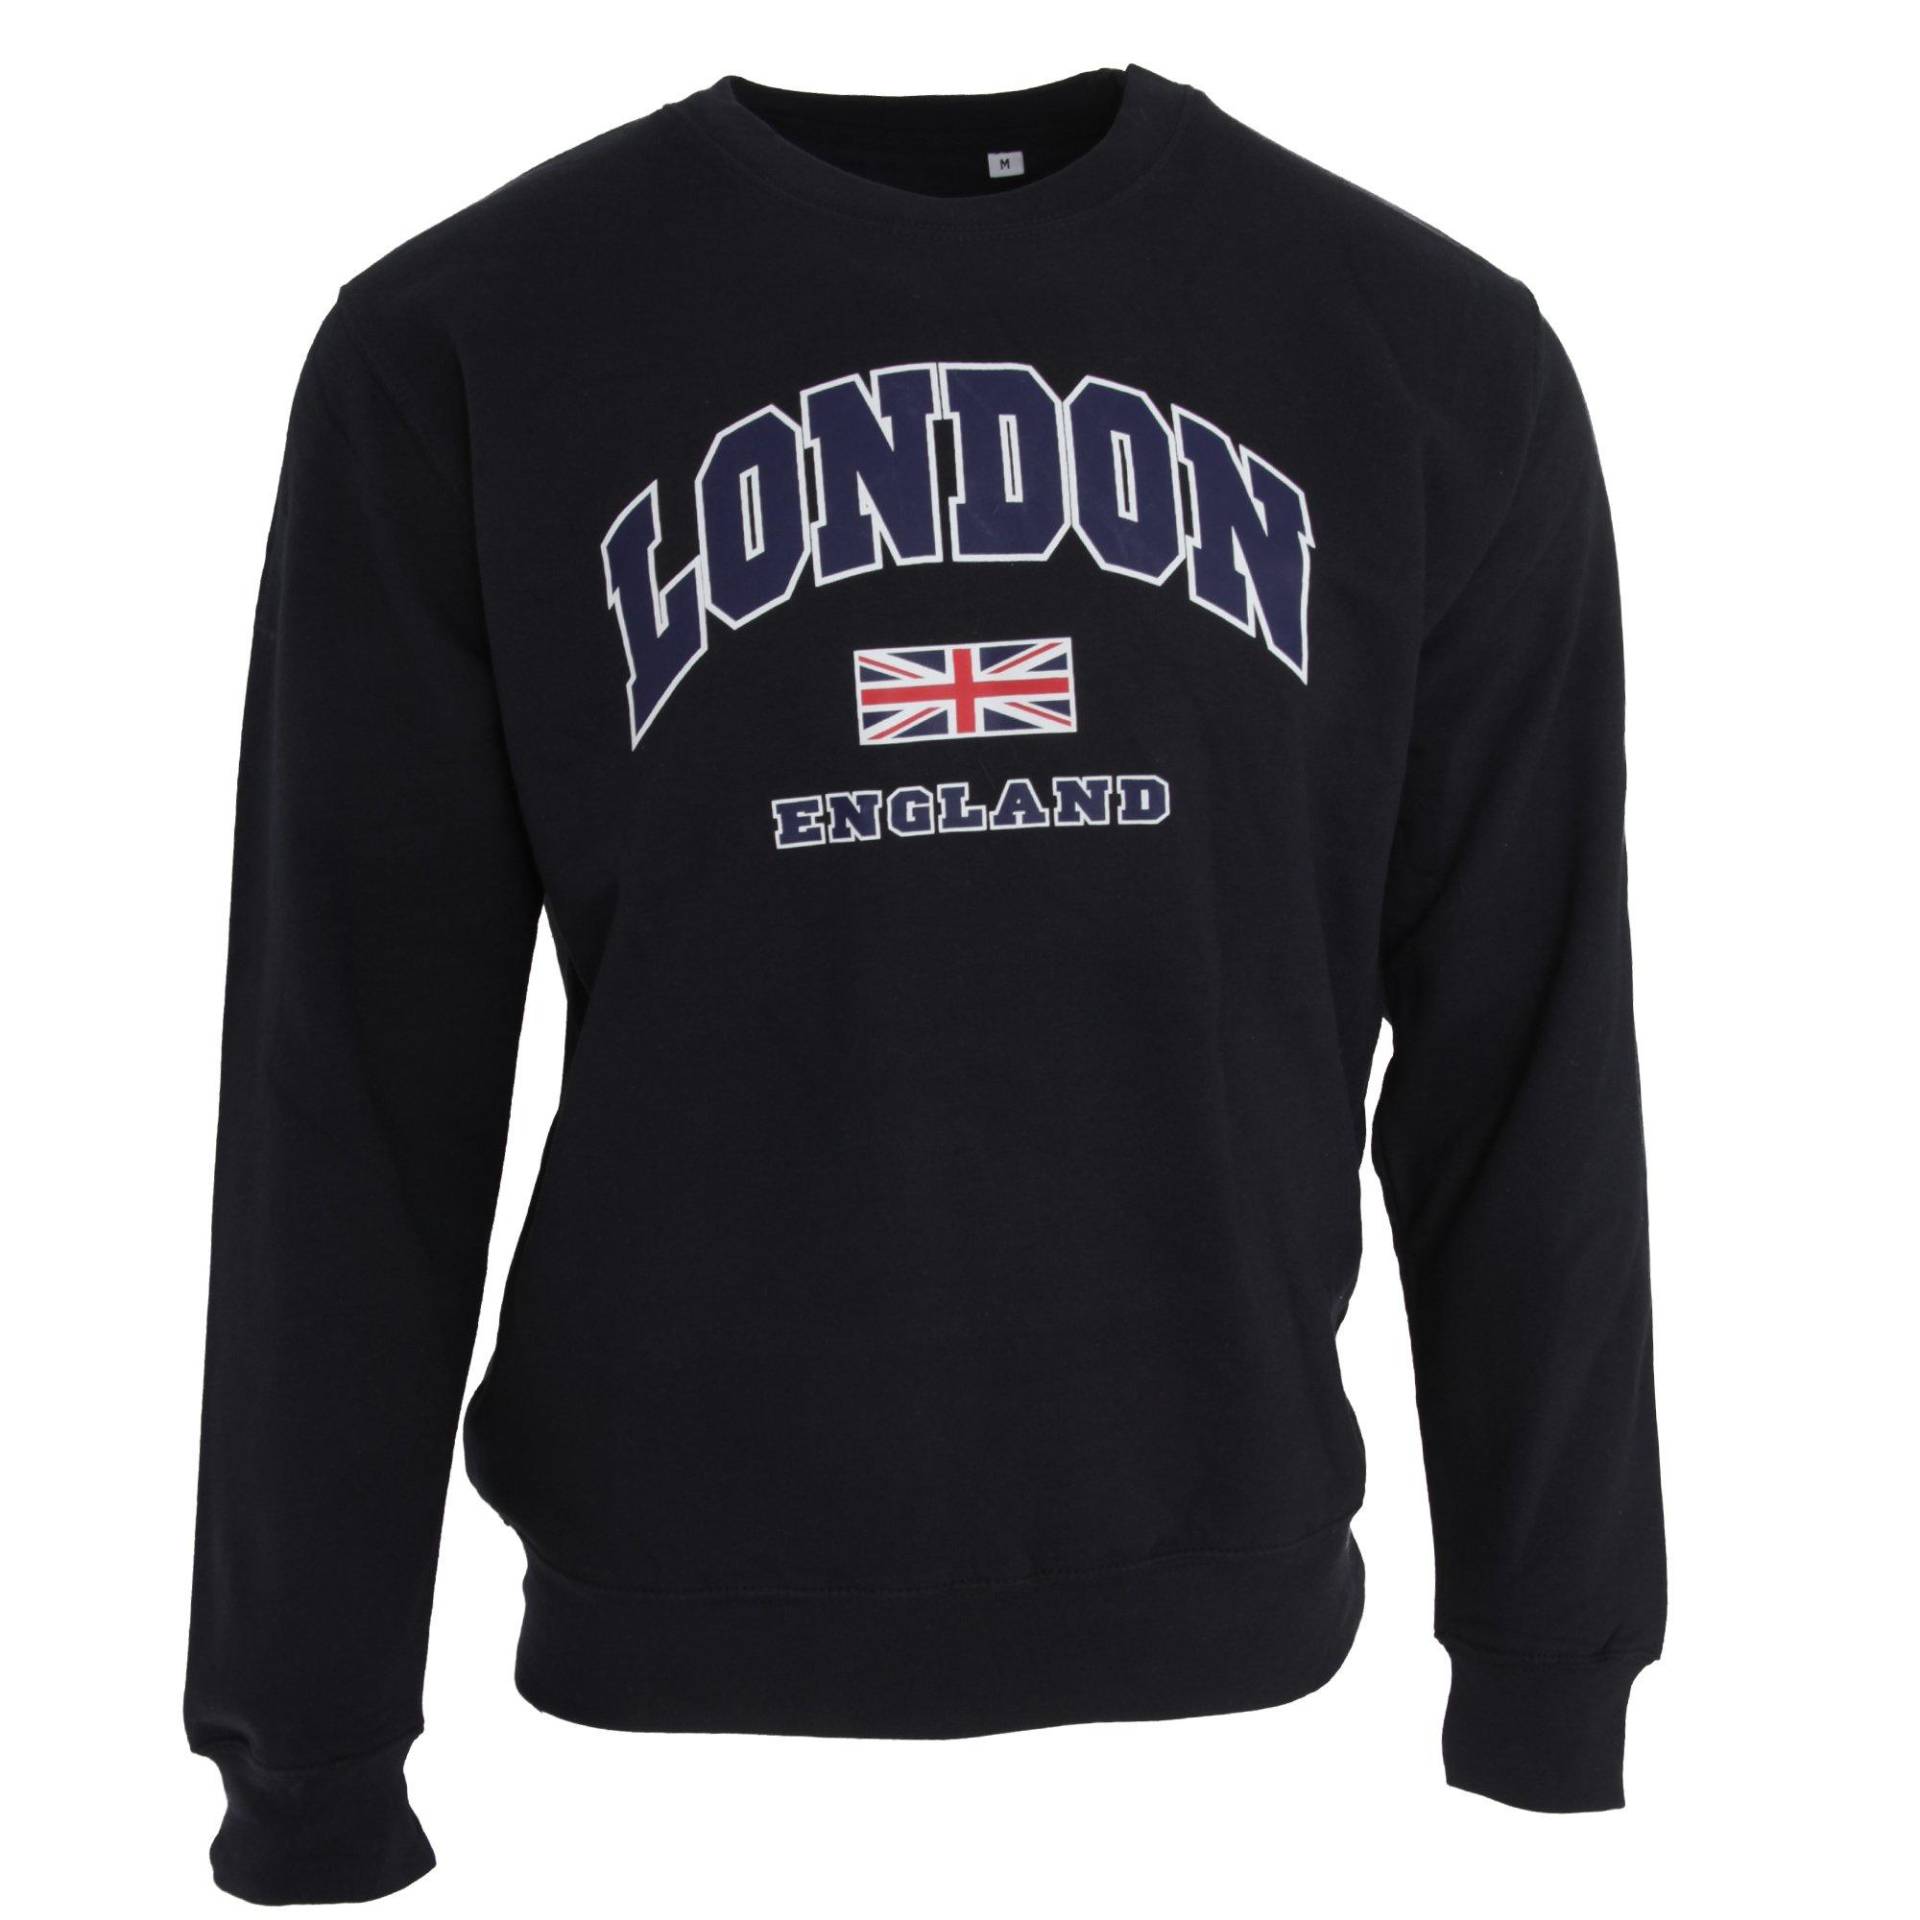 Sweatshirt Mit Aufschrift London England Und Unionjackdesign Herren Marine M von Universal Textiles